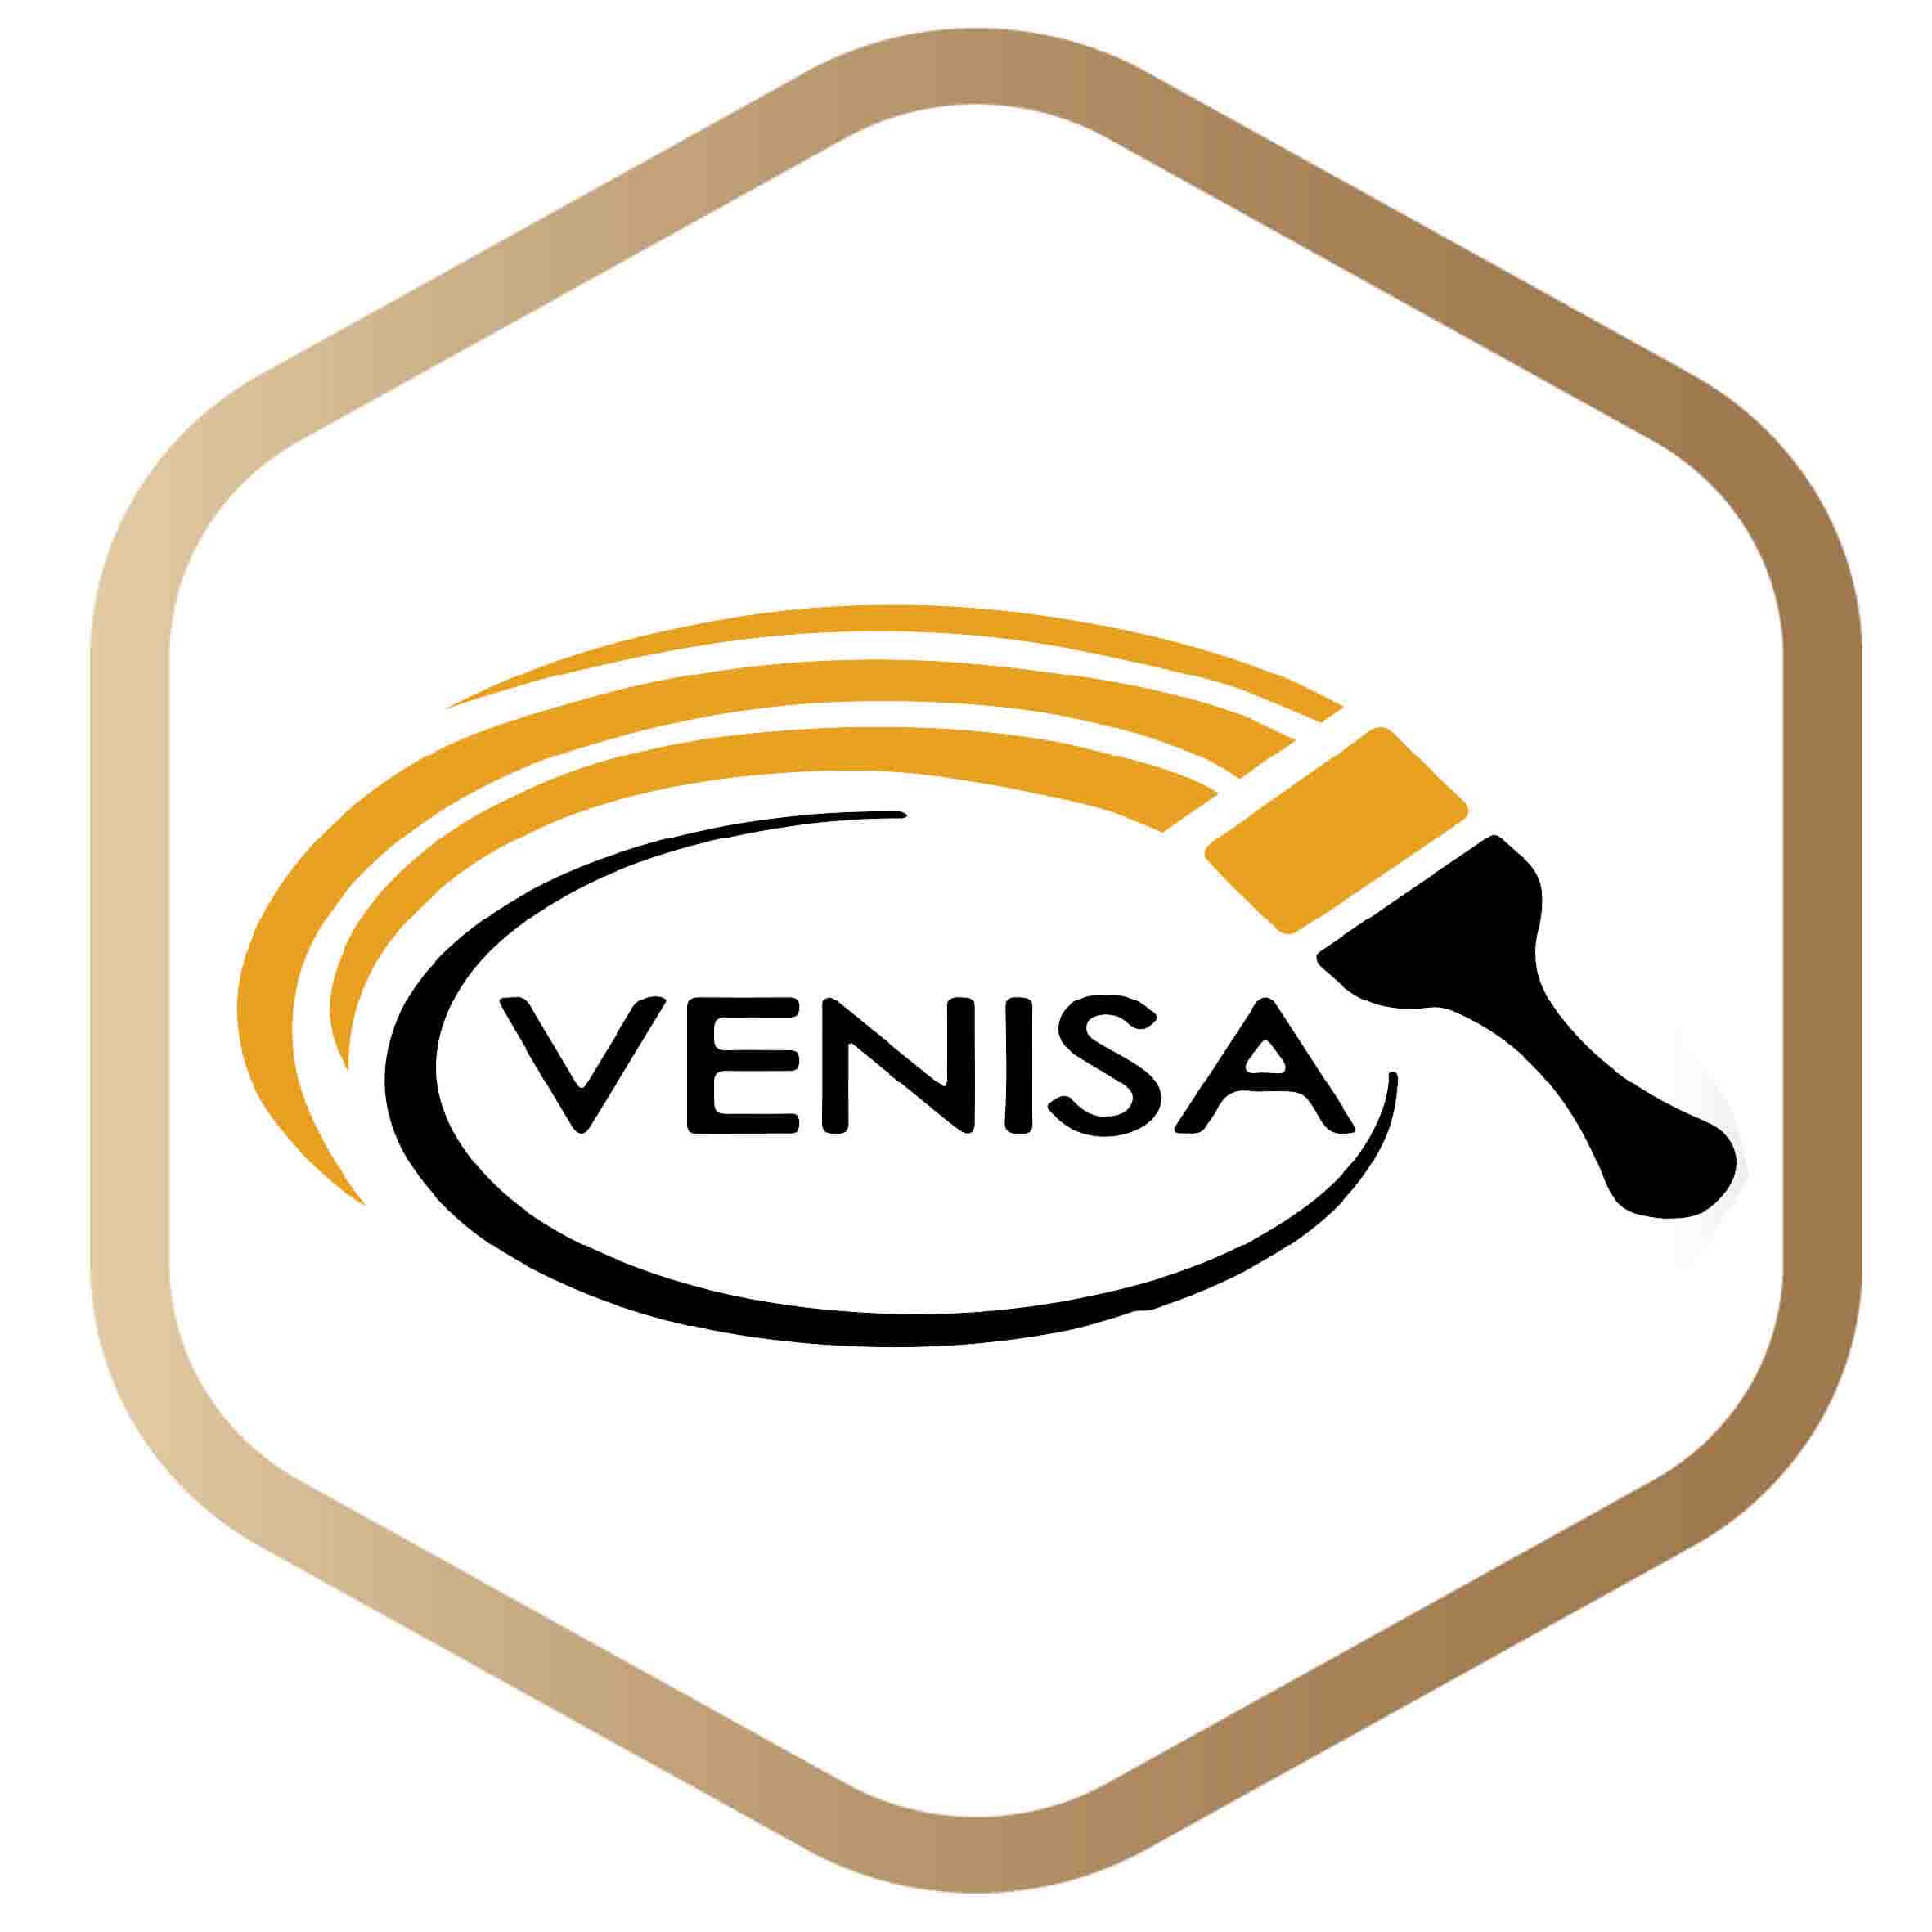 قلم مو رنگ ونیسا - لیست قیمت محصولات ونیسا